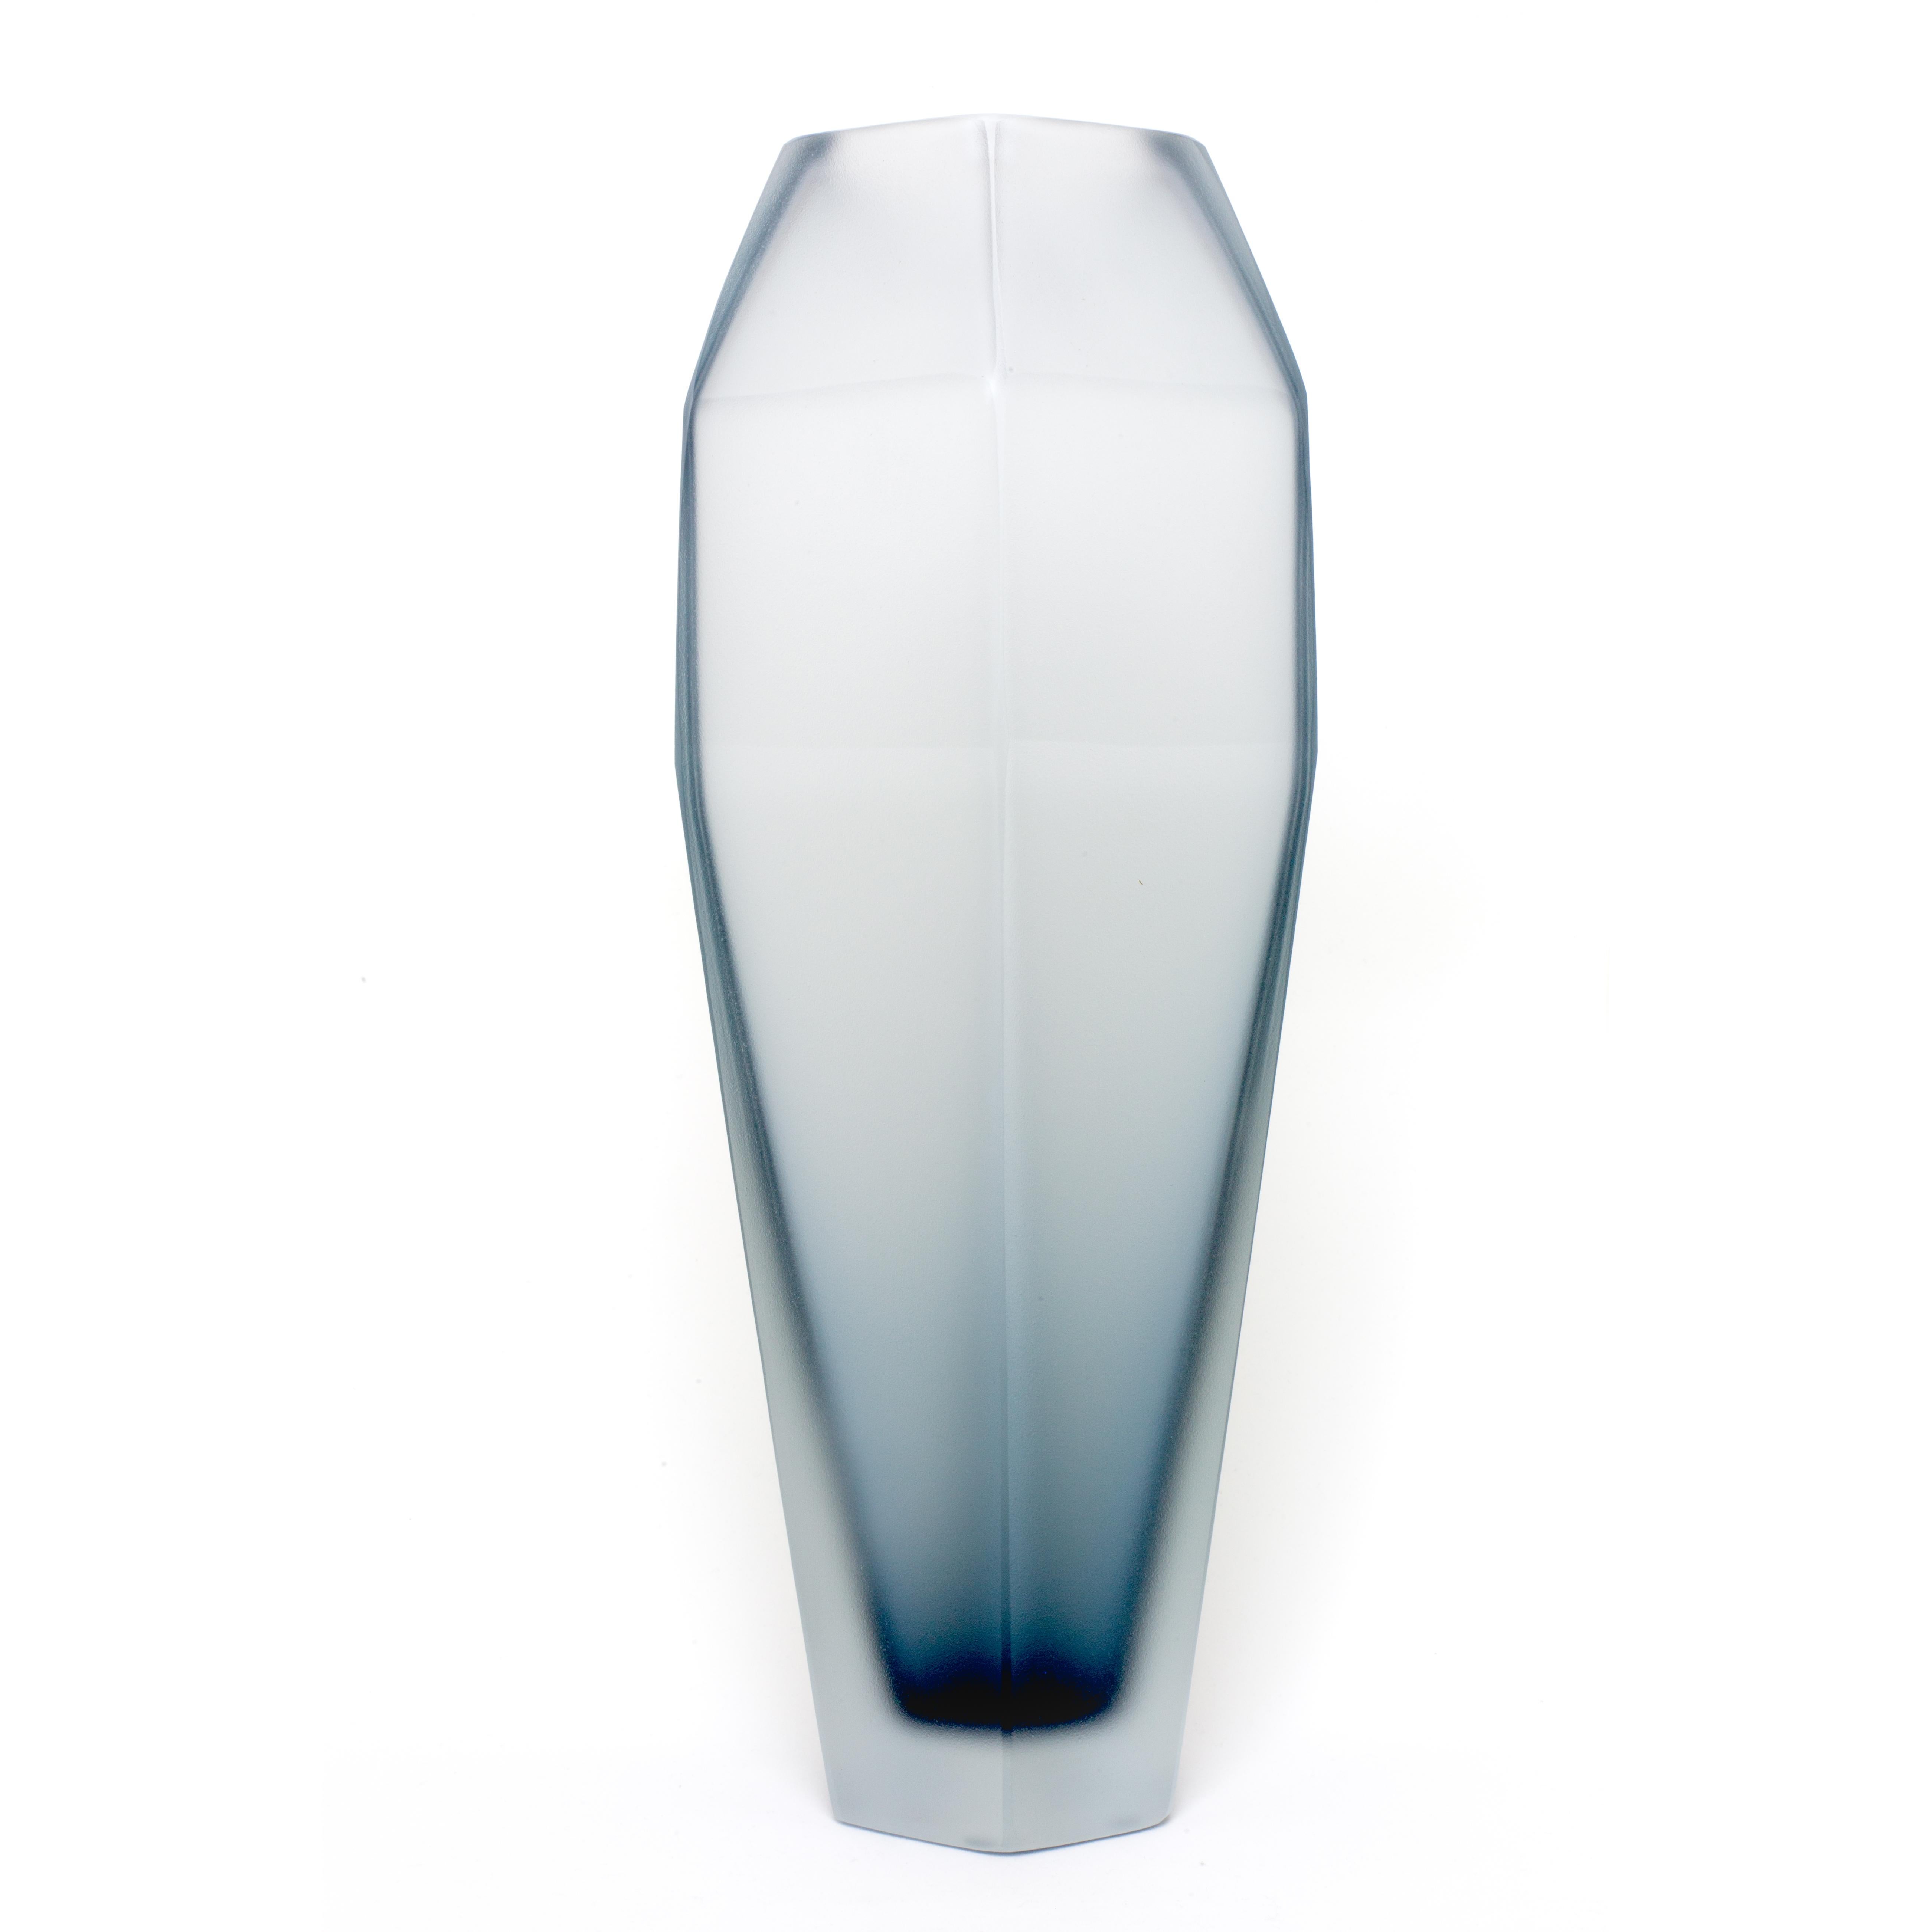 21e siècle Alessandro Mendini, vase givré GEMELLO, verre de Murano.
Purho poursuit sa recherche de produits aux formes complémentaires avec la paire de vases Gemello et Gemella conçus par Alessandro Mendini. Partageant le même concept de design, les